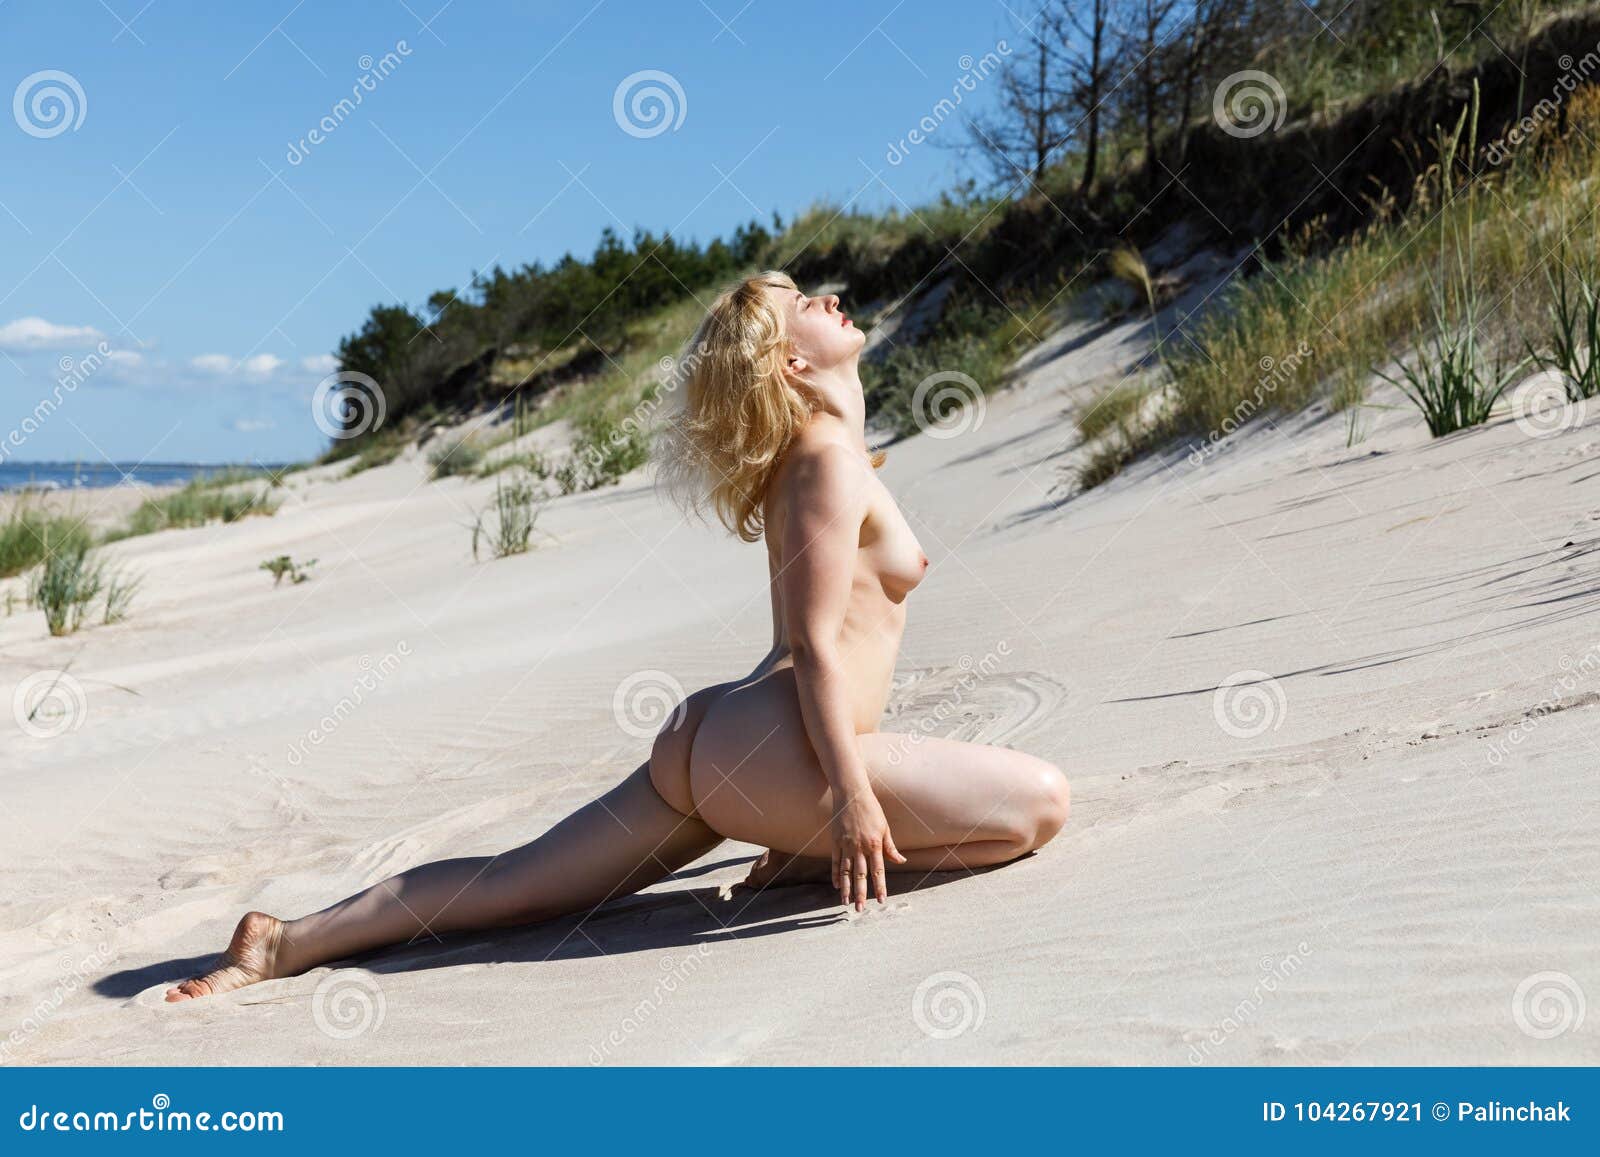 Beautiful Nude Girls On Beach